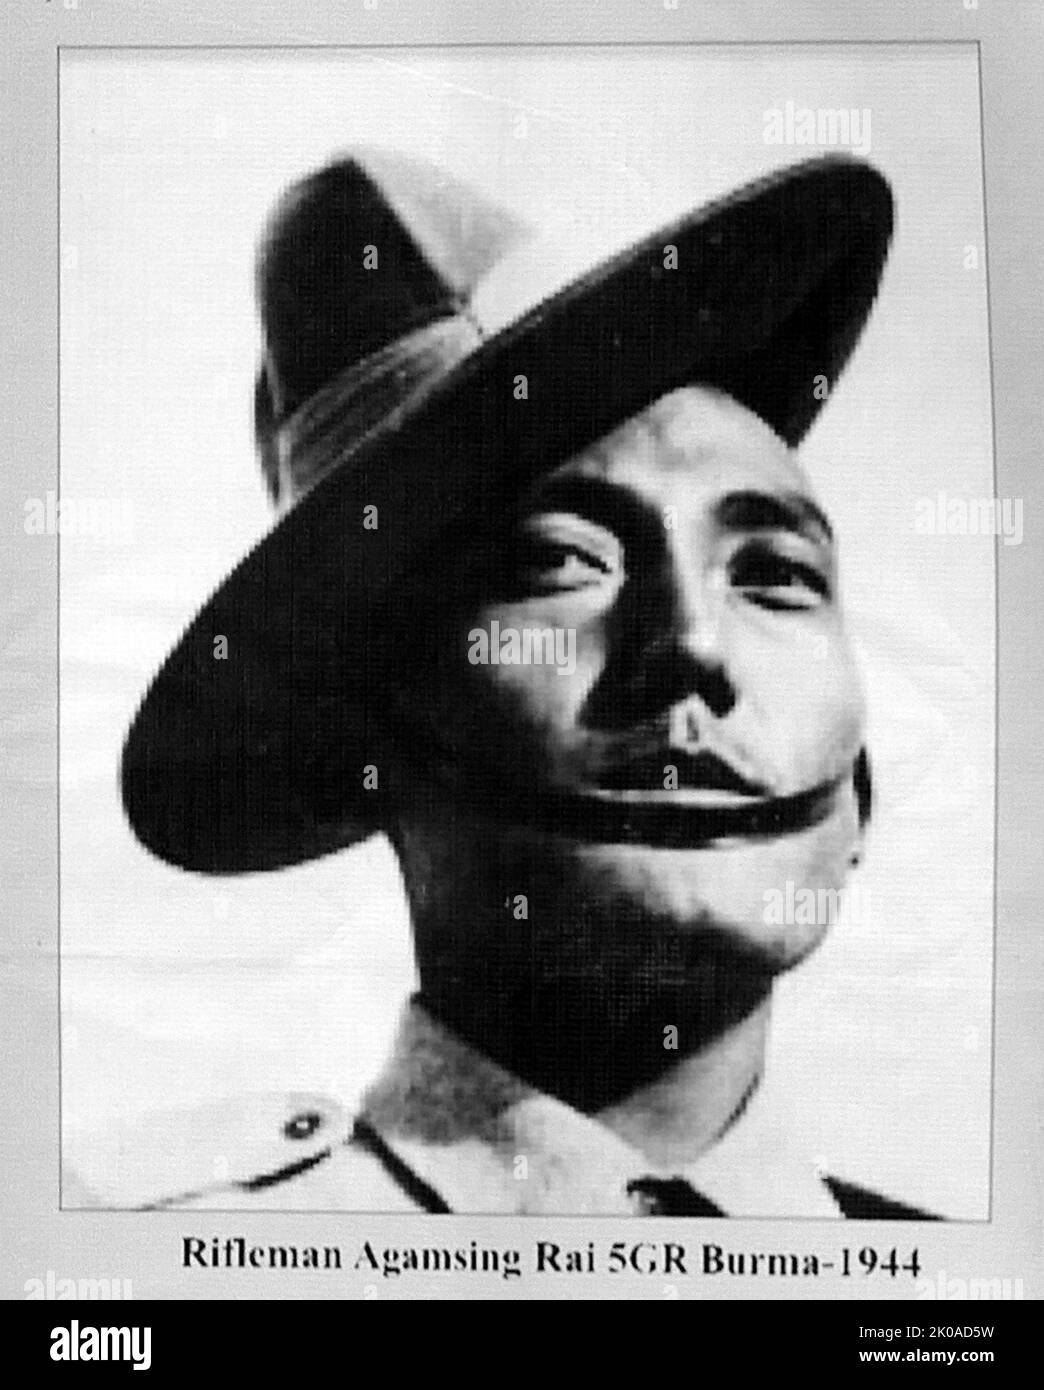 Agansing Rai VC (24. April 1920 - 27. Mai 2000) war ein nepalesischer Gurkha-Träger des Victoria-Kreuzes, der höchsten und renommiertesten Auszeichnung für die Galanterie gegenüber dem Feind, die an britische und Commonwealth-Streitkräfte vergeben werden kann. Agansing Rai war ein 24-jähriger Naik im Bataillon 2., 5. Royal Gurkha Gewehre, in der indischen Armee während des Zweiten Weltkriegs, Als er seine Abteilung bei einem Angriff auf einen von zwei vom Feind eingenommenen Posten anführte und am 26. Juni 1944 in der Nähe der Stadt Bishenpur im indischen Bundesstaat Manipur die Kommunikation der britischen Streitkräfte bedrohte. Stockfoto